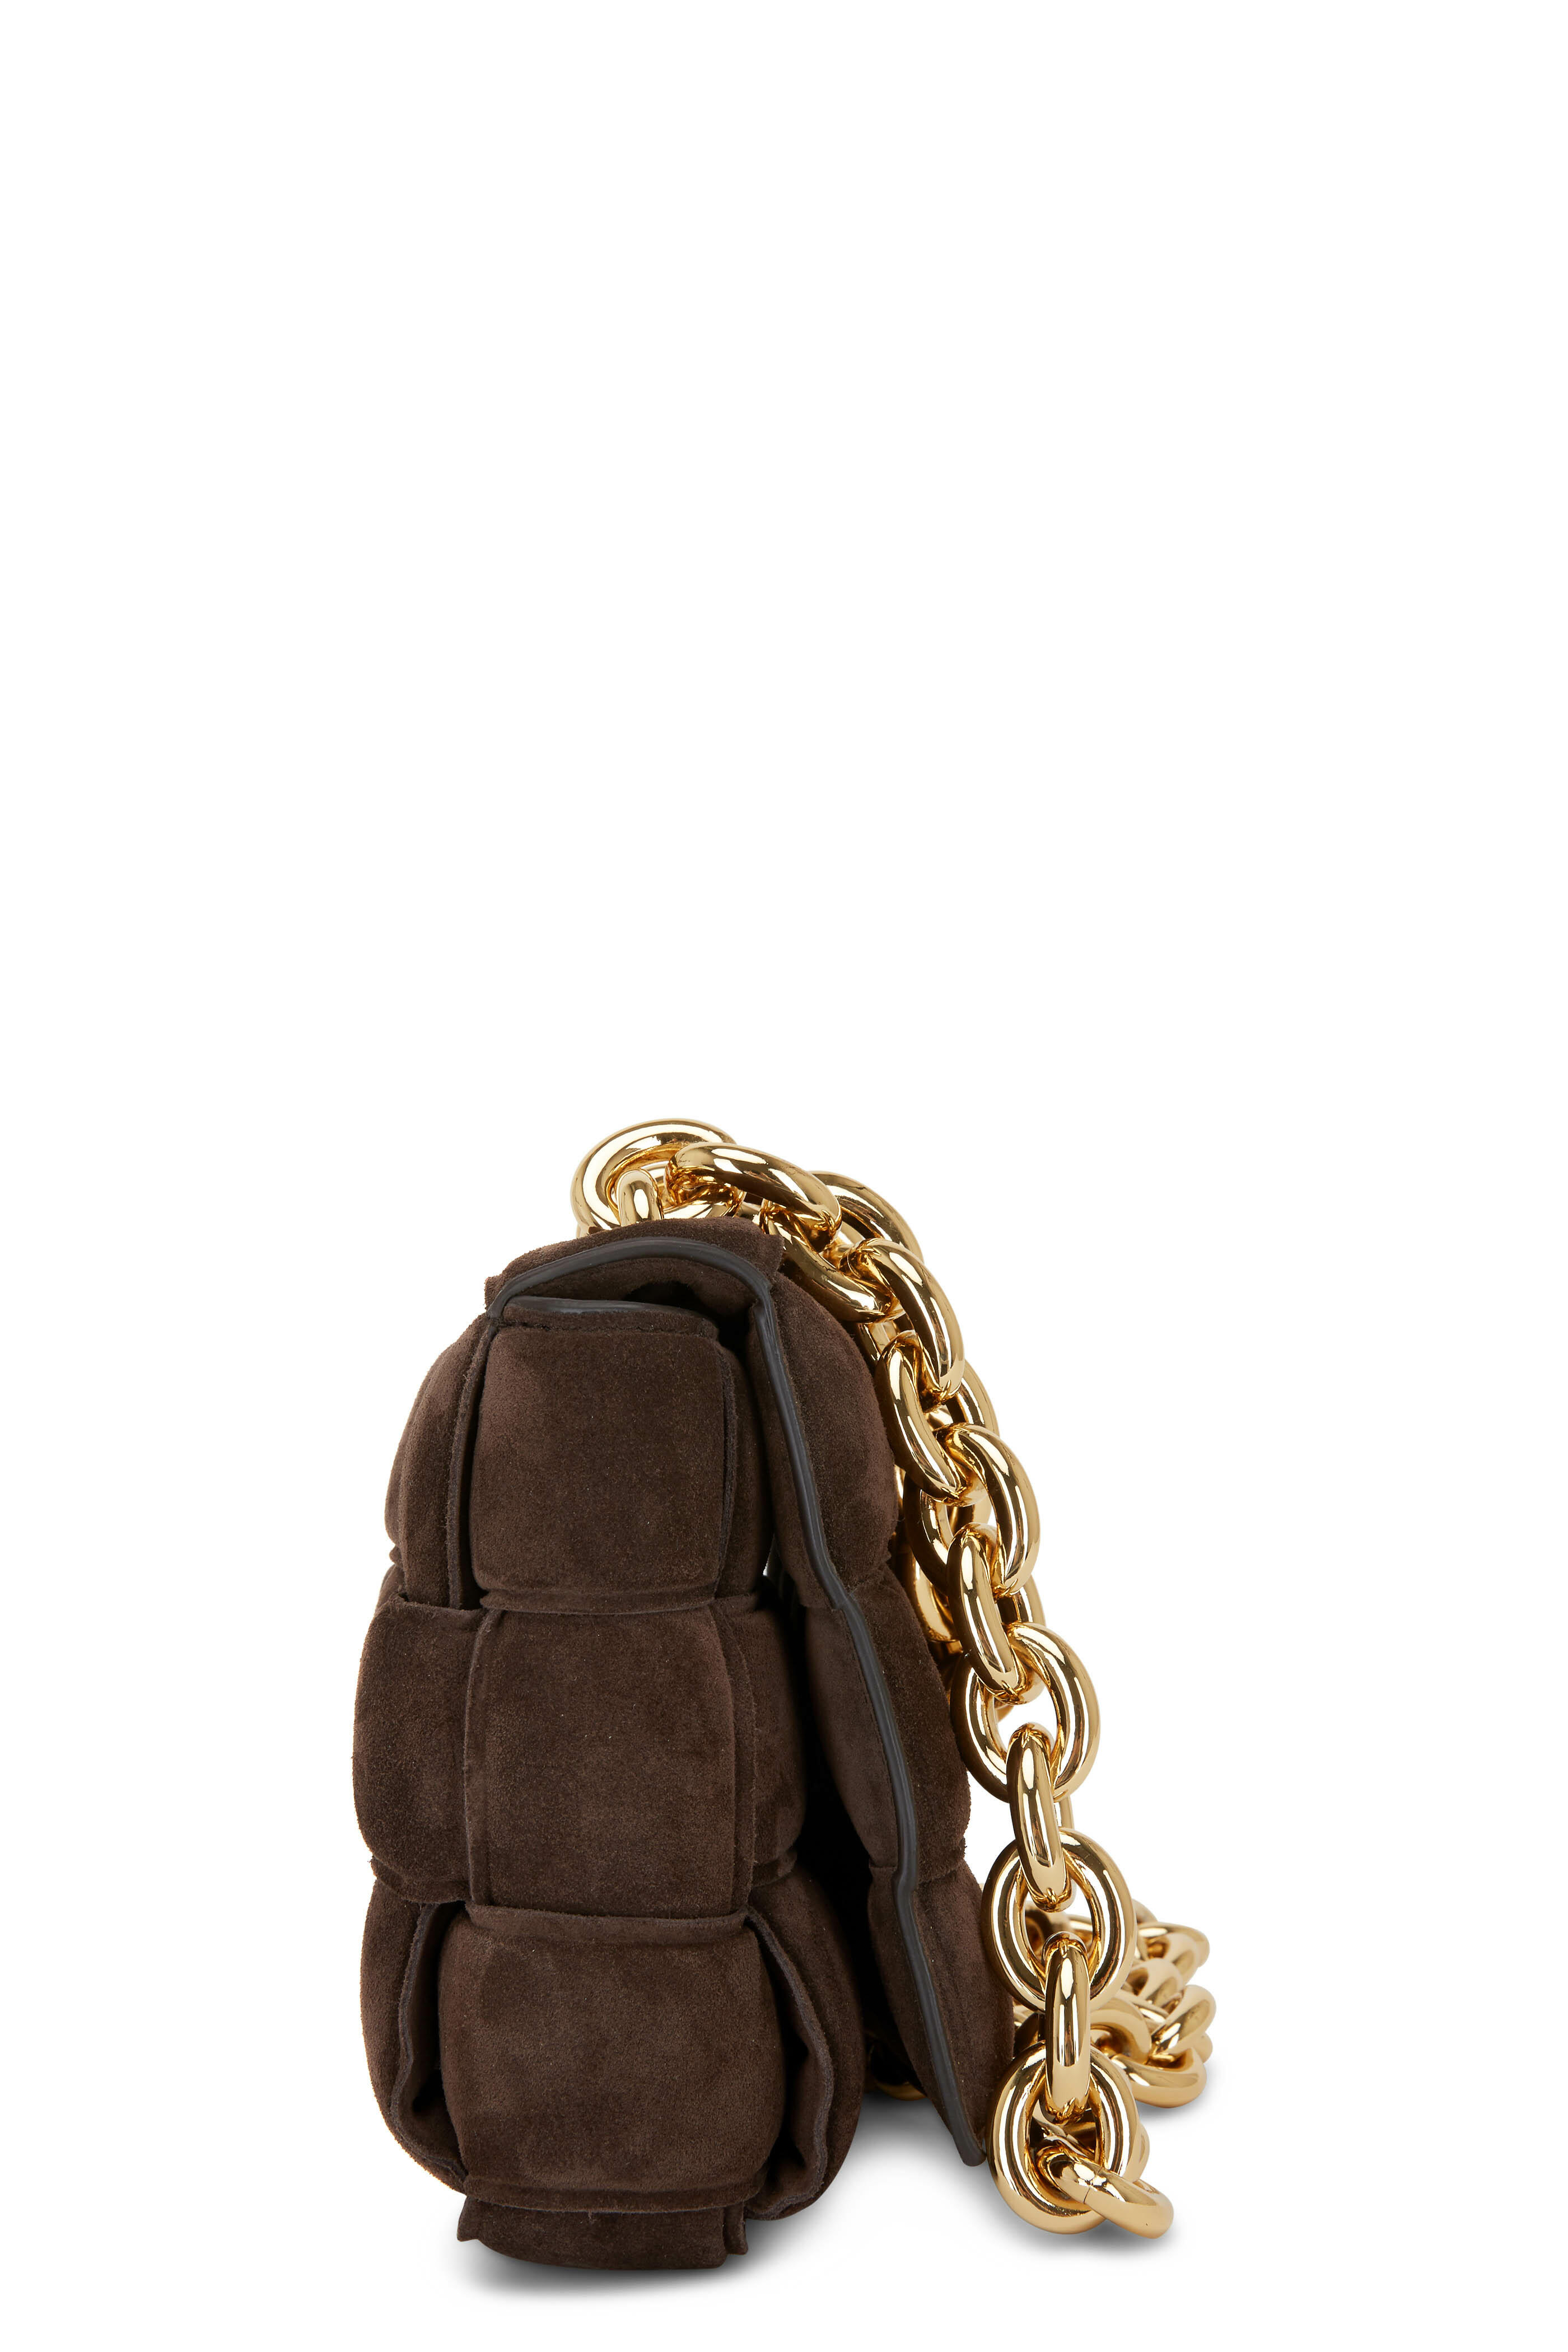 Bottega Veneta Cassette Woven Leather Shoulder Bag - Parakeet/Gold